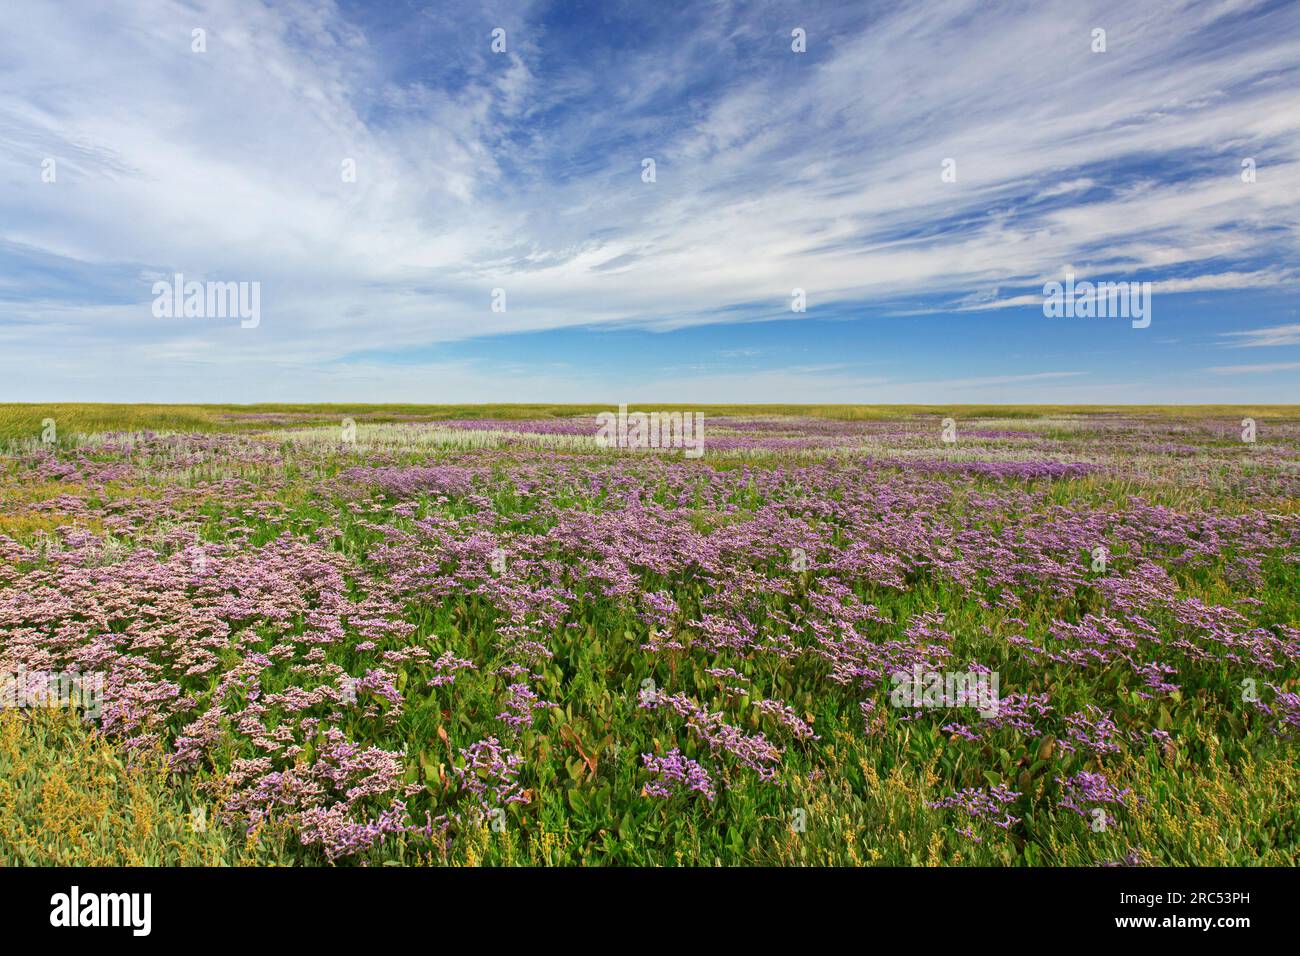 Common sea-lavender (Limonium vulgare) halophyte flowering in salt marsh / saltmarsh in summer, Wadden Sea National park, Schleswig-Holstein, Germany Stock Photo